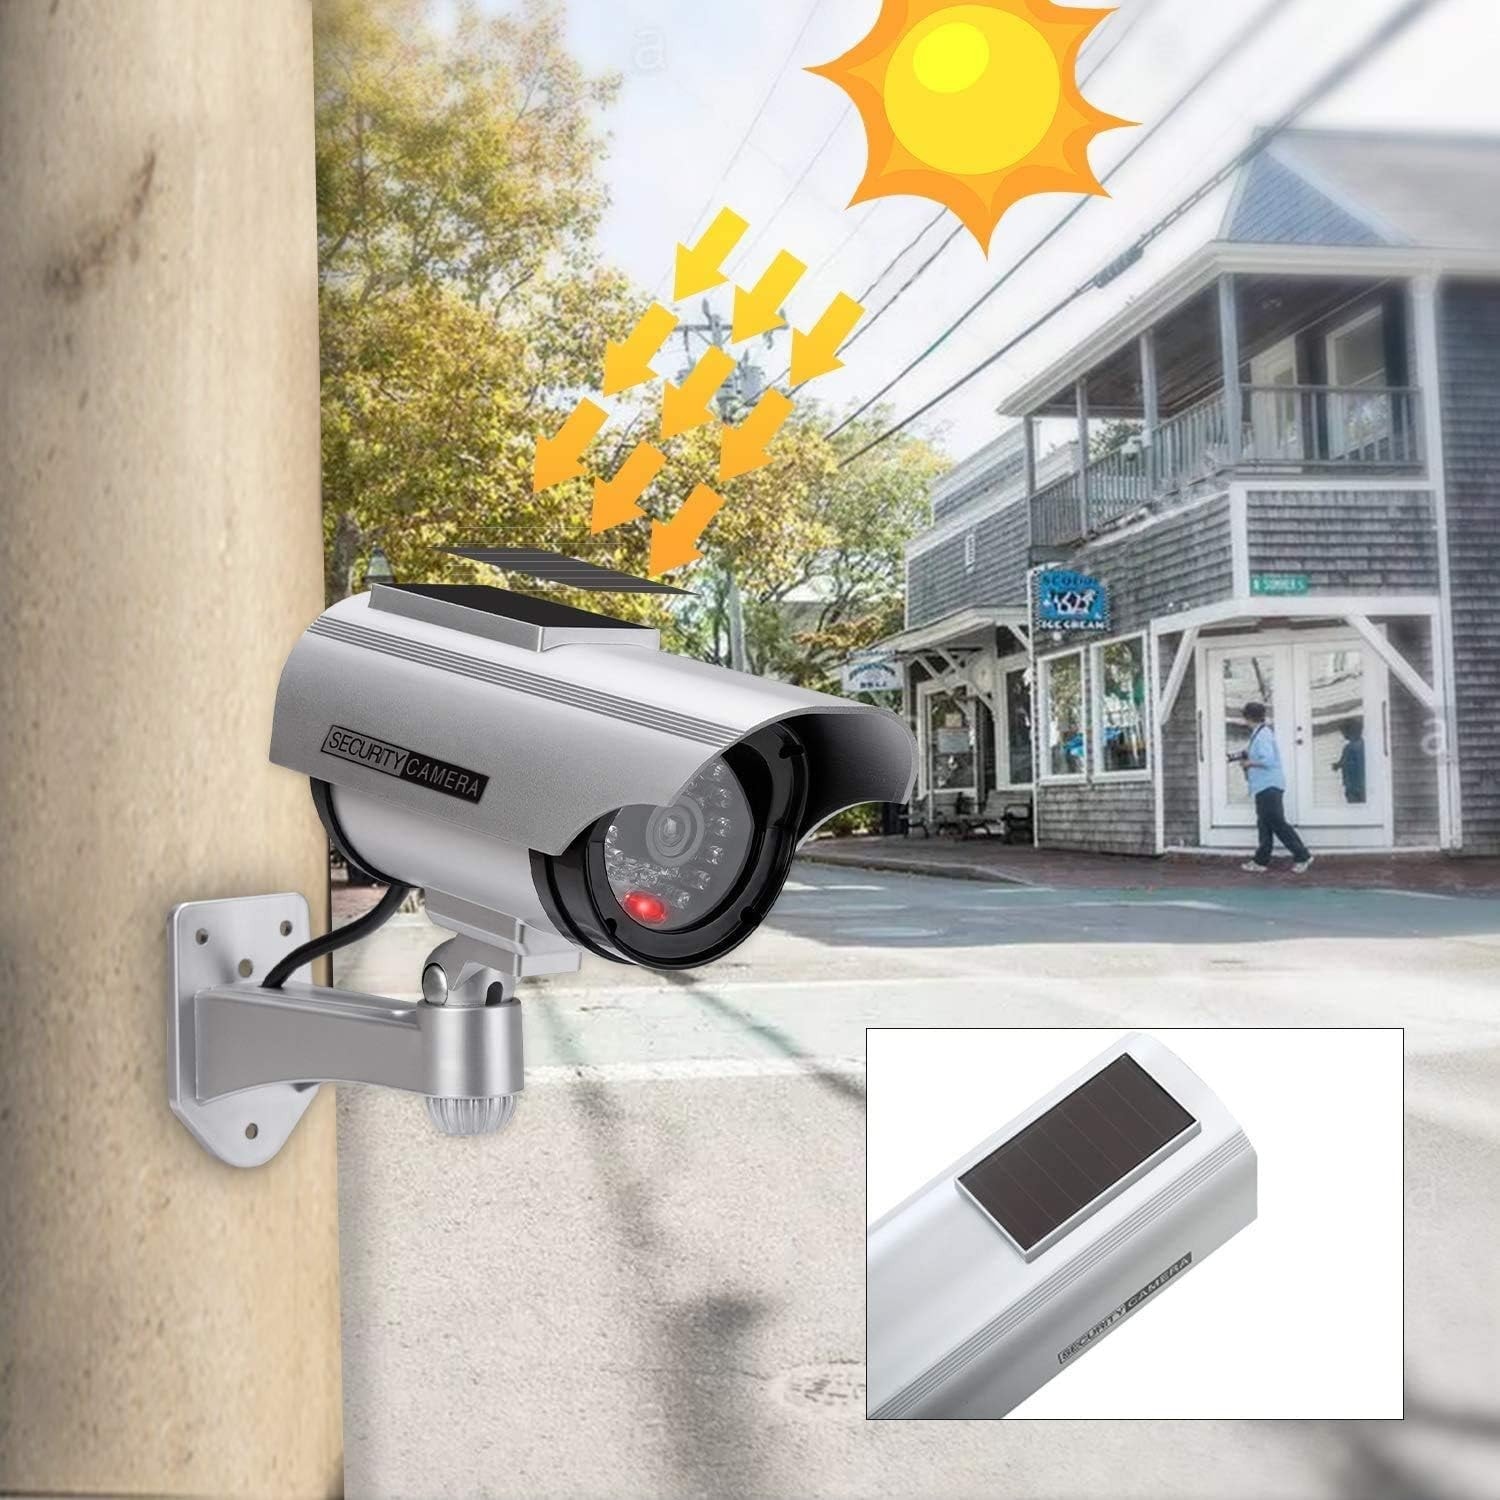 DODUOS 2 Camera Factice Exterieur avec LED, Noir Fausse Camera Surveillance  Exterieur, Caméra Factice Extérieur, Camera de Surveillance Factice pour  Une Utilisation à L'intérieur et à L'extérieur : : High-Tech